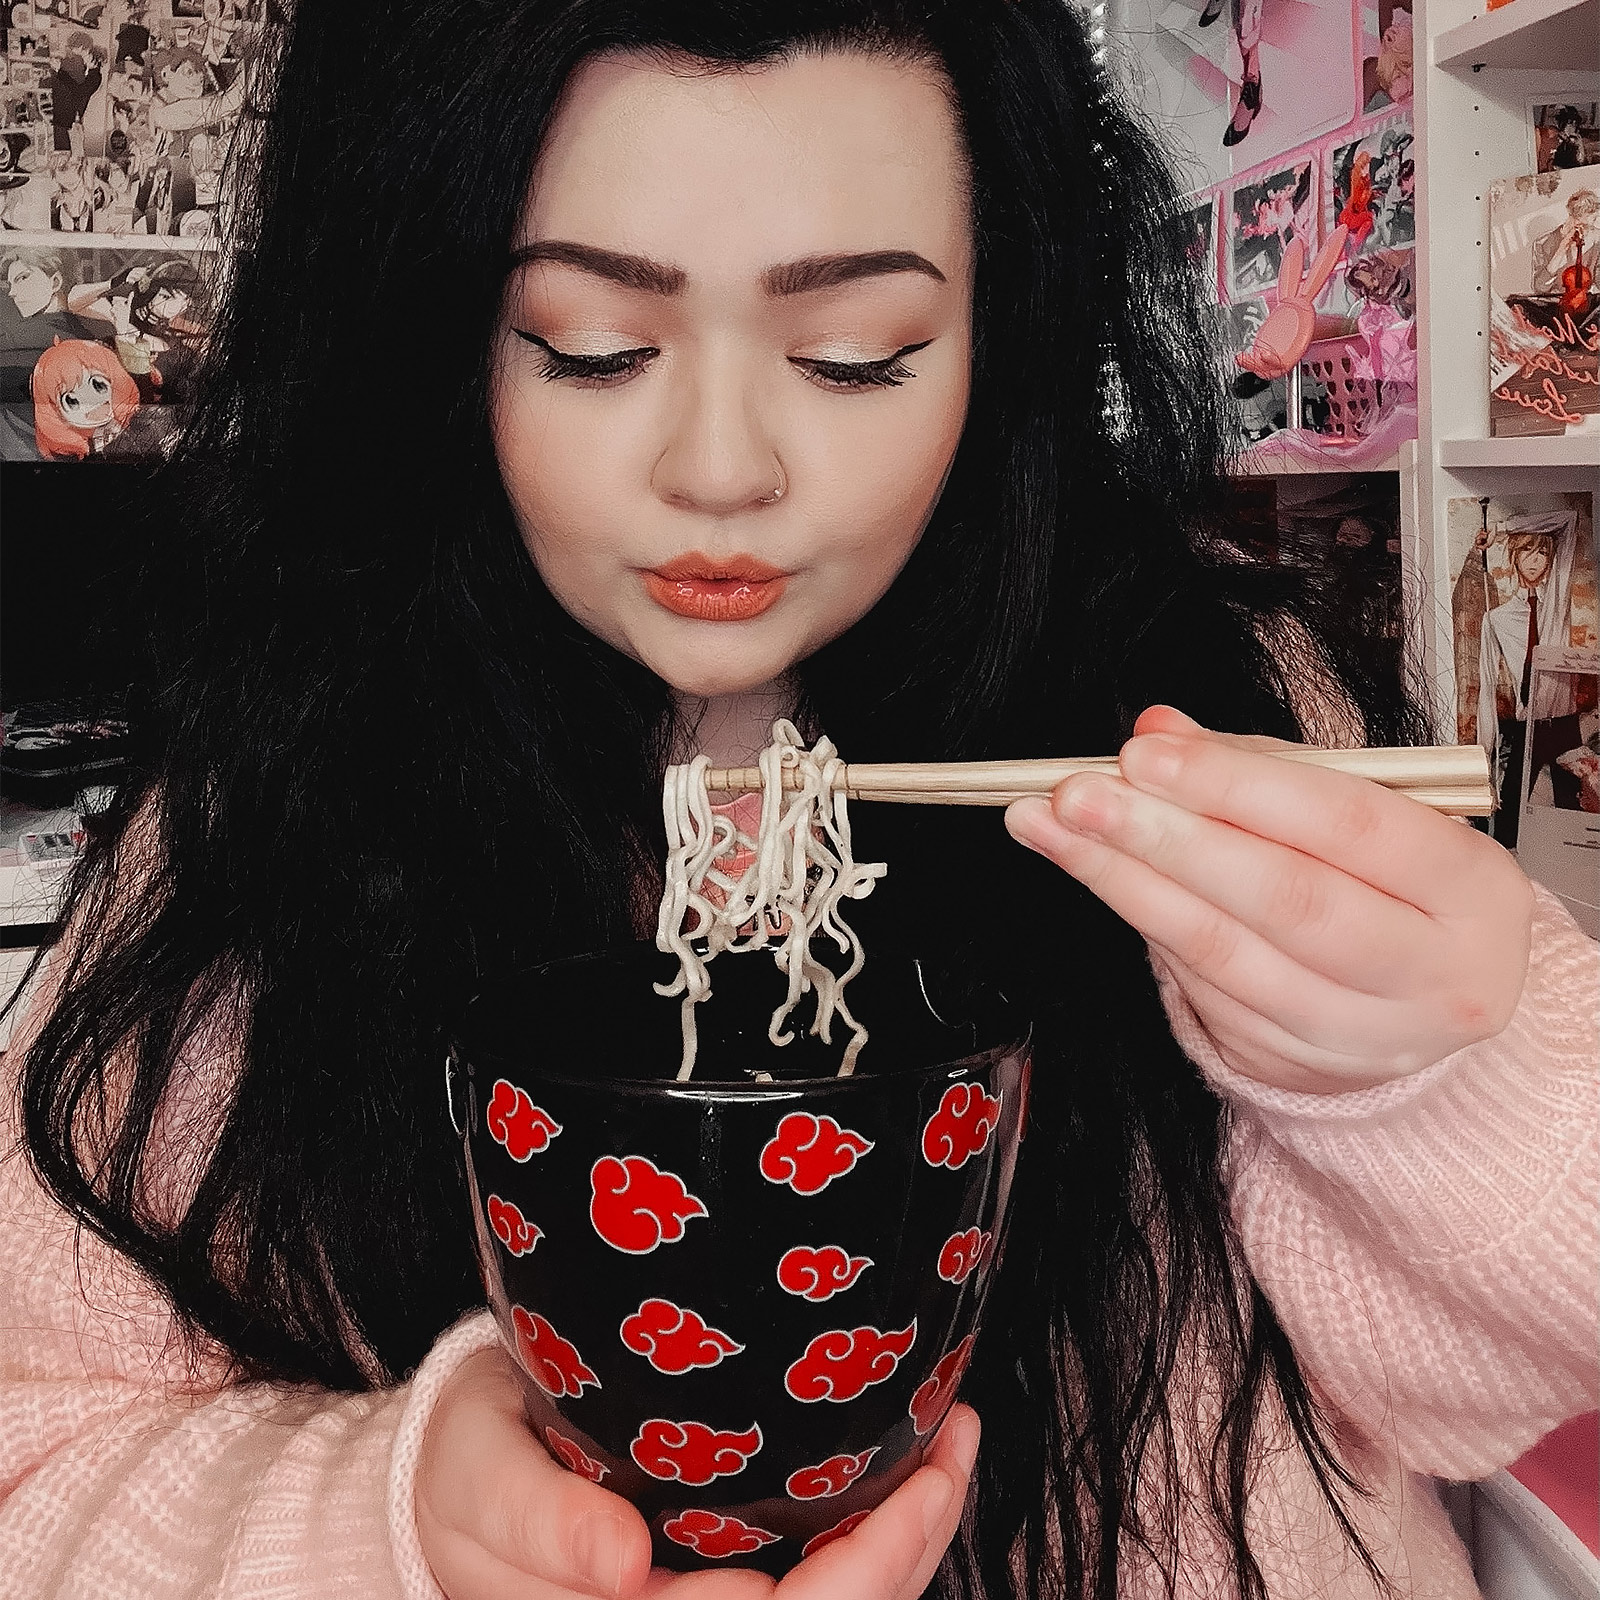 Naruto - Akatsuki Ramen Bowl with Chopsticks